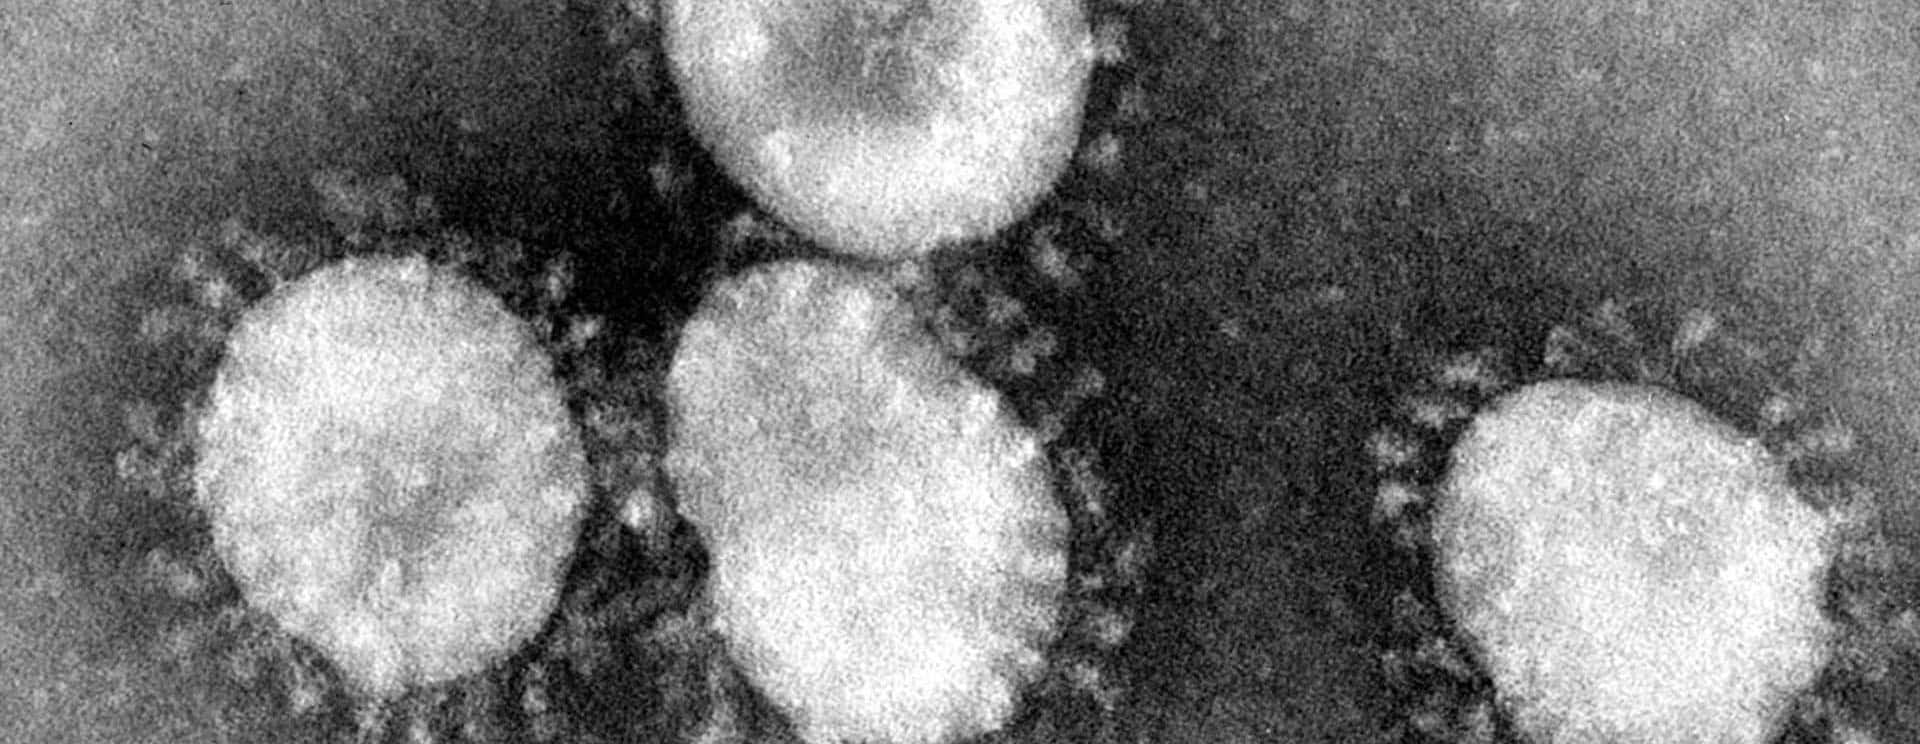 coronaviruses-jpg-36